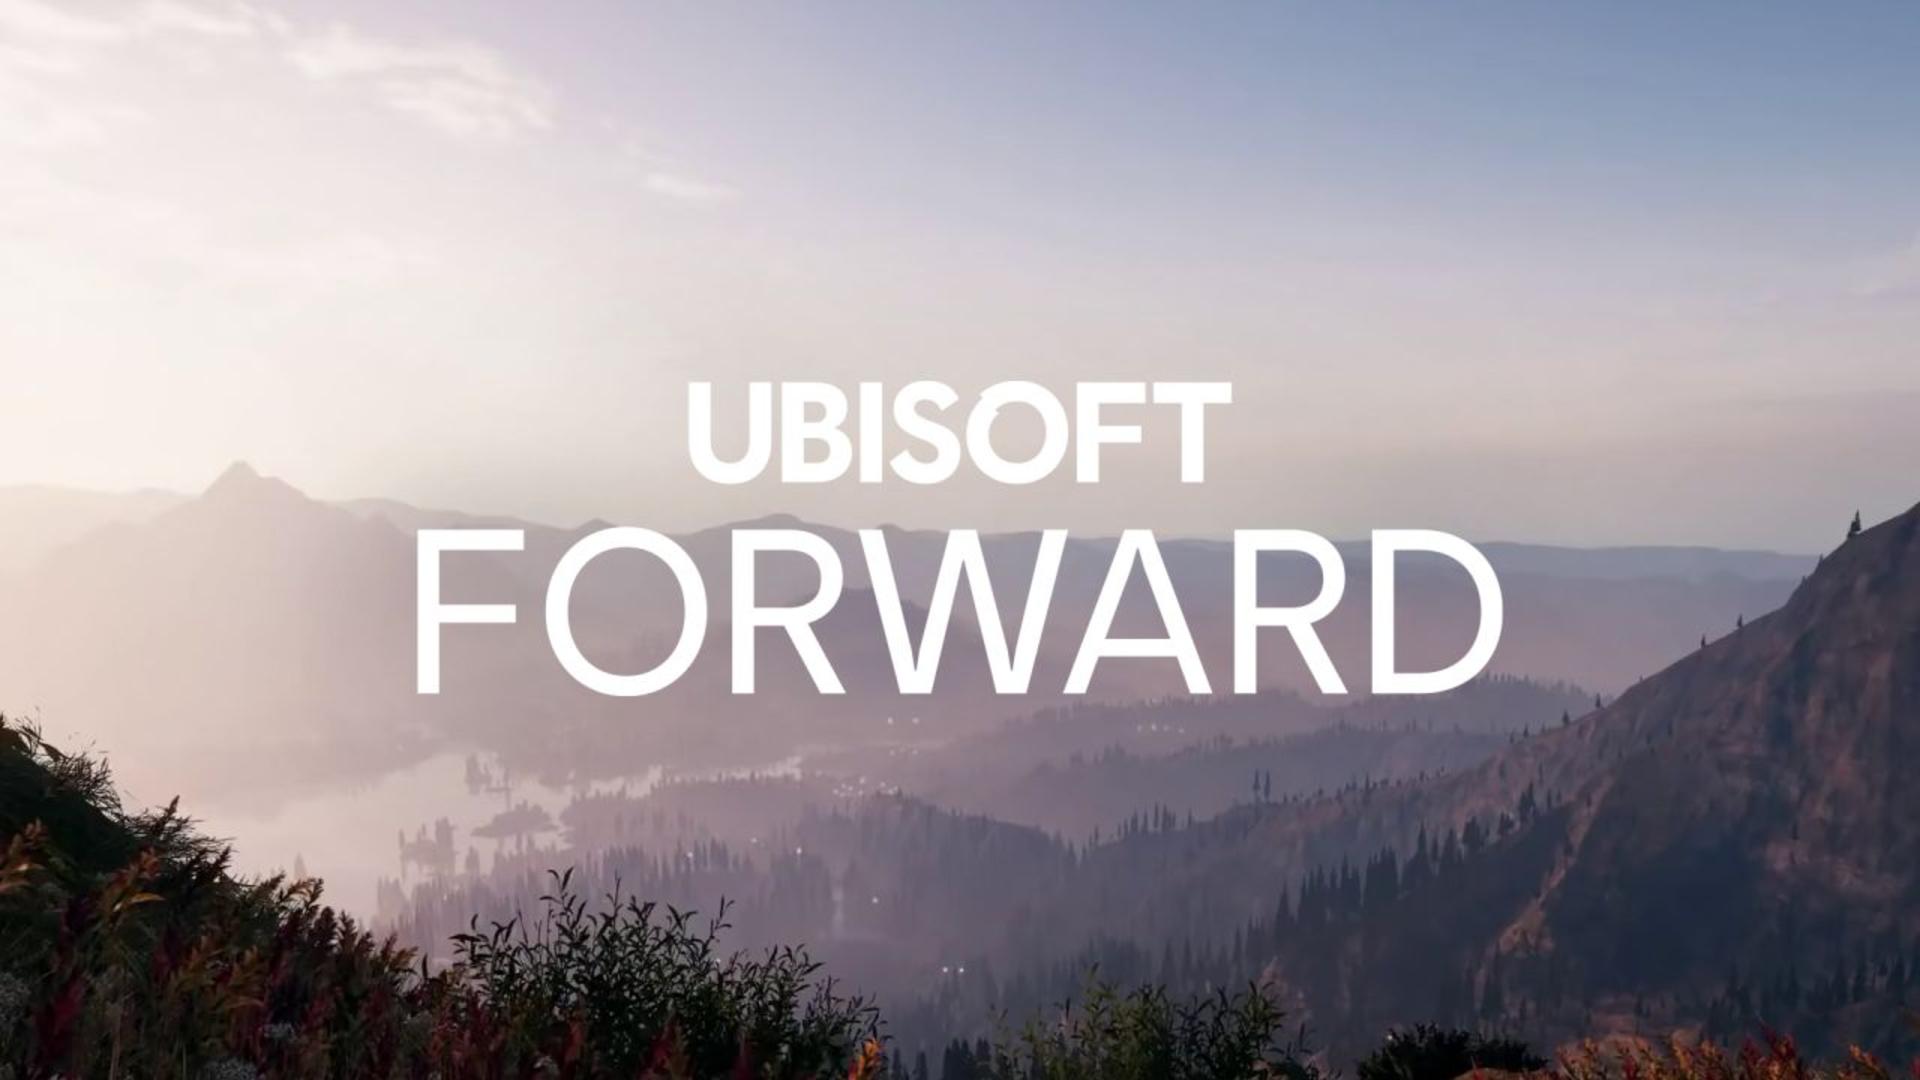 Ubisoft forward será o evento online em julho | f19f21a1 ubisoft forward | transformers | ubisoft forward transformers